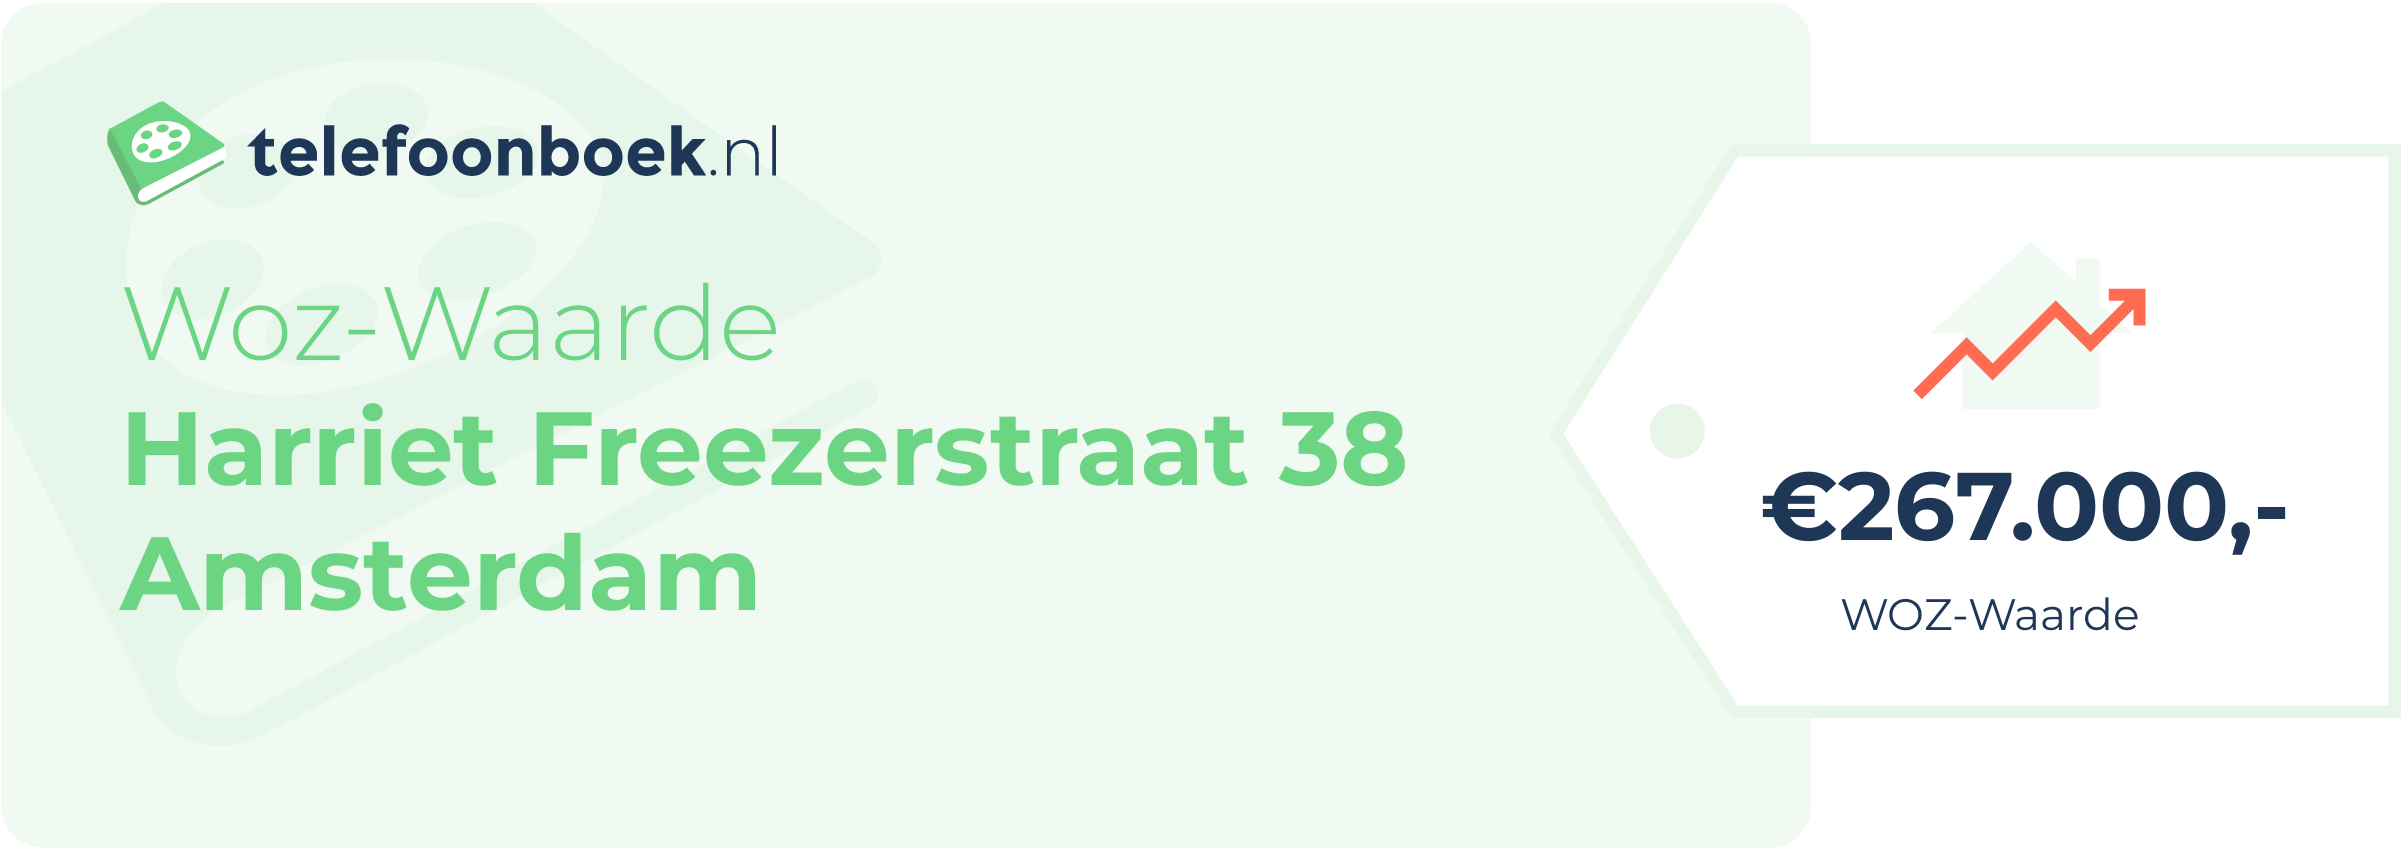 WOZ-waarde Harriet Freezerstraat 38 Amsterdam